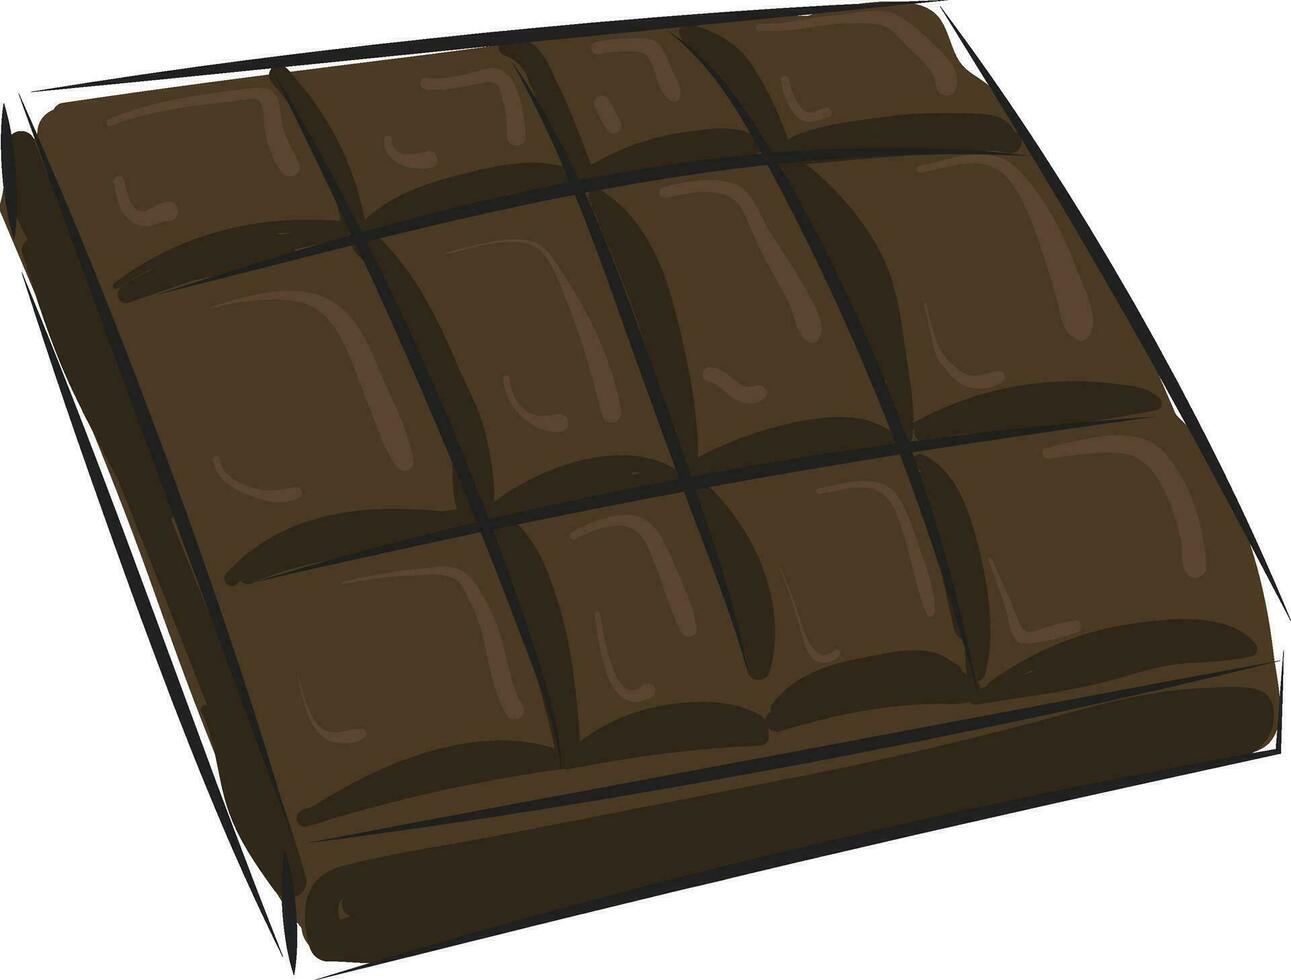 imagem do chocolate - leite chocolate, vetor ou cor ilustração.